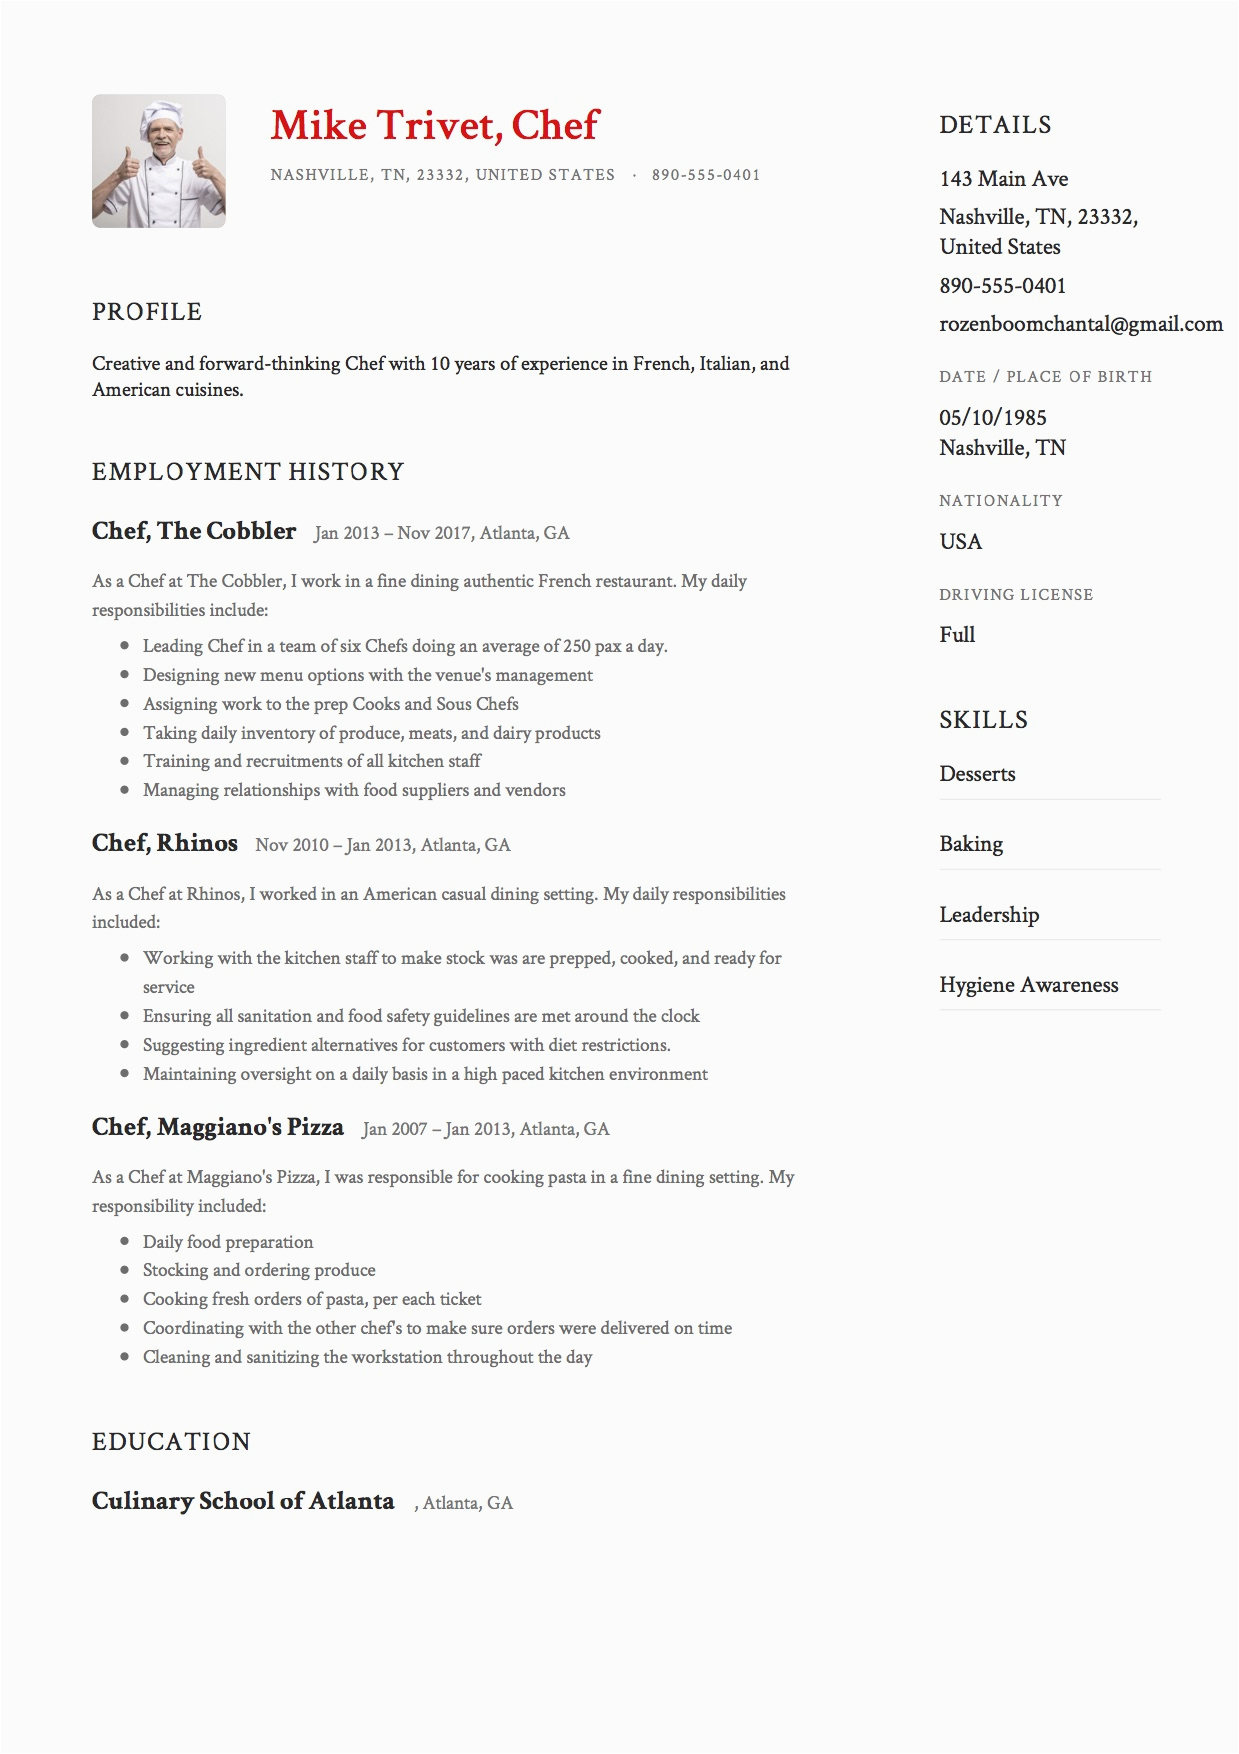 Resume Samples for Restaurant Jobs Cook Full Guide Chef Resume [ 12 Samples ] Pdf & Word